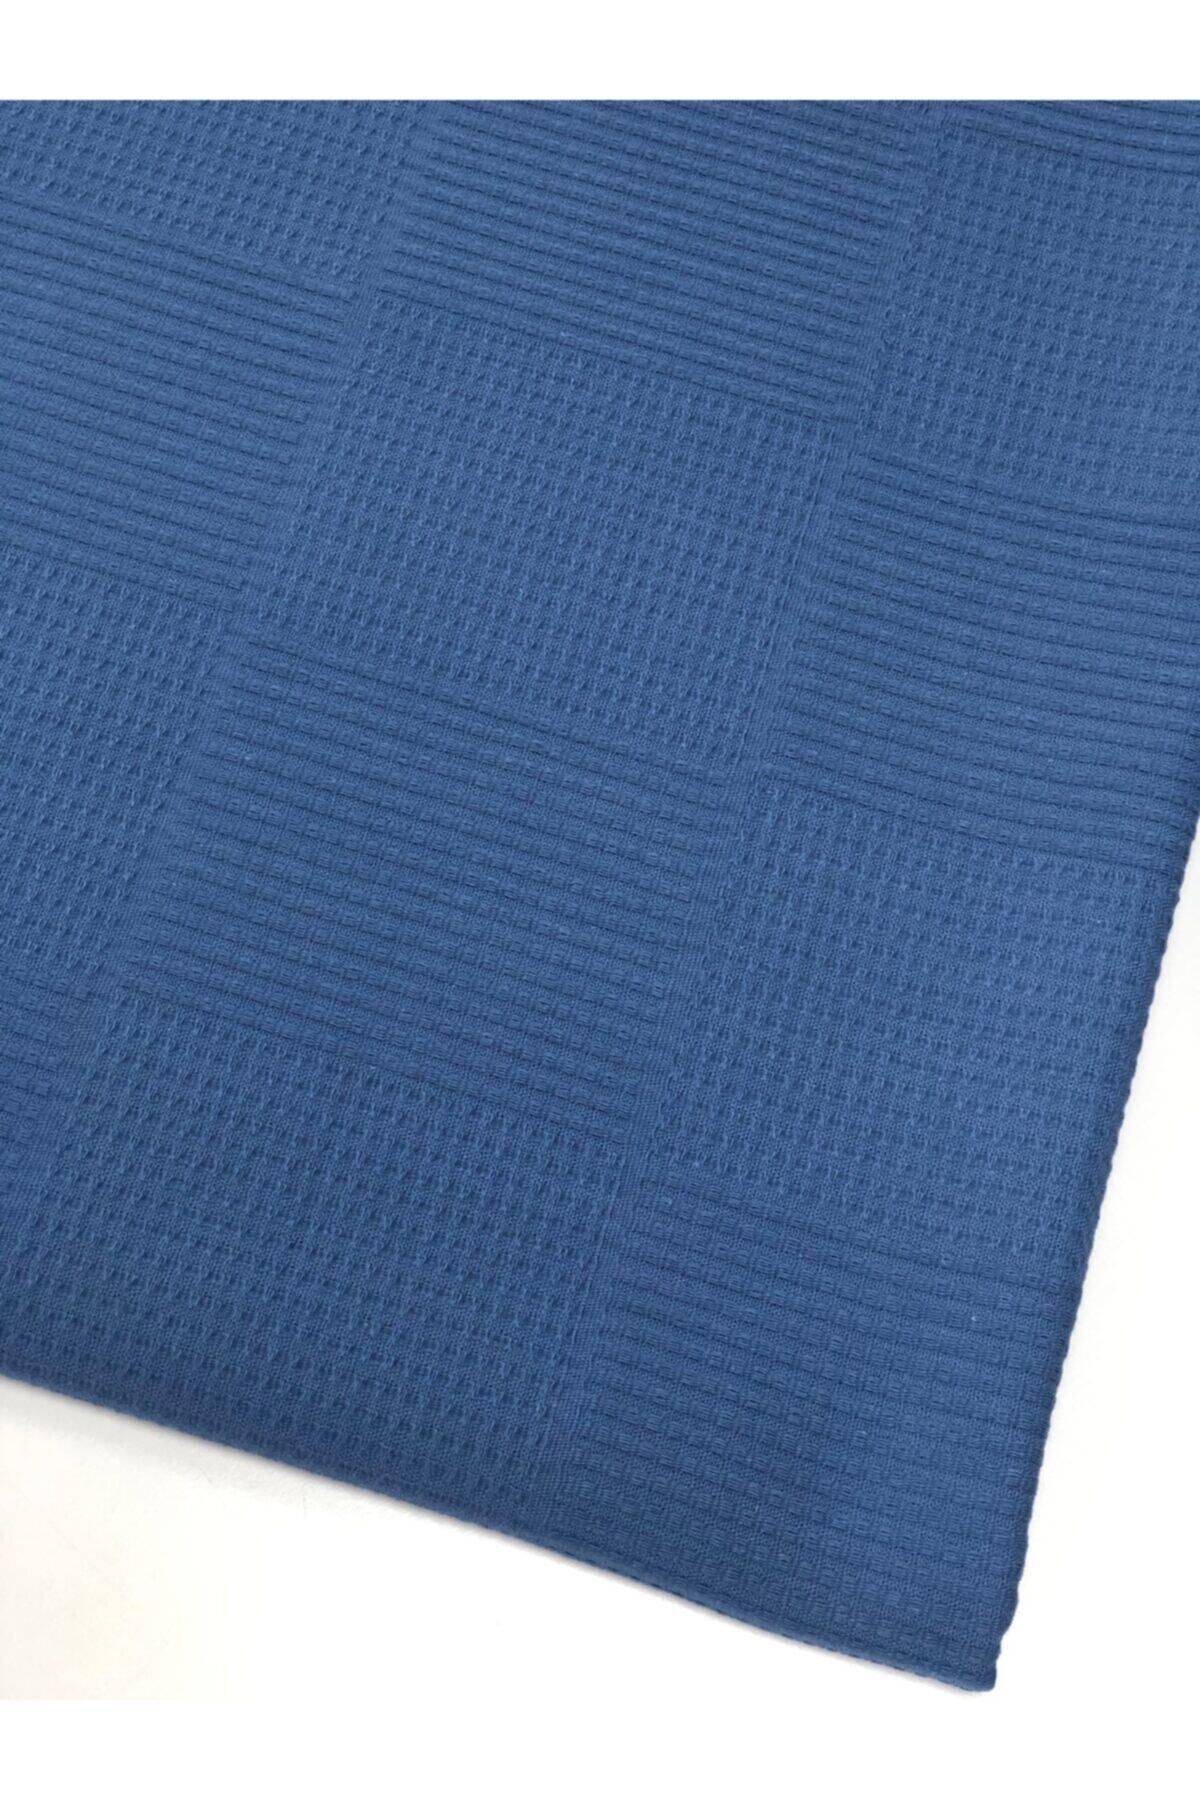 Sefaoğlu tekstil King Size Pike, Renk Indigo Mavi, Çekme Yapmaz.